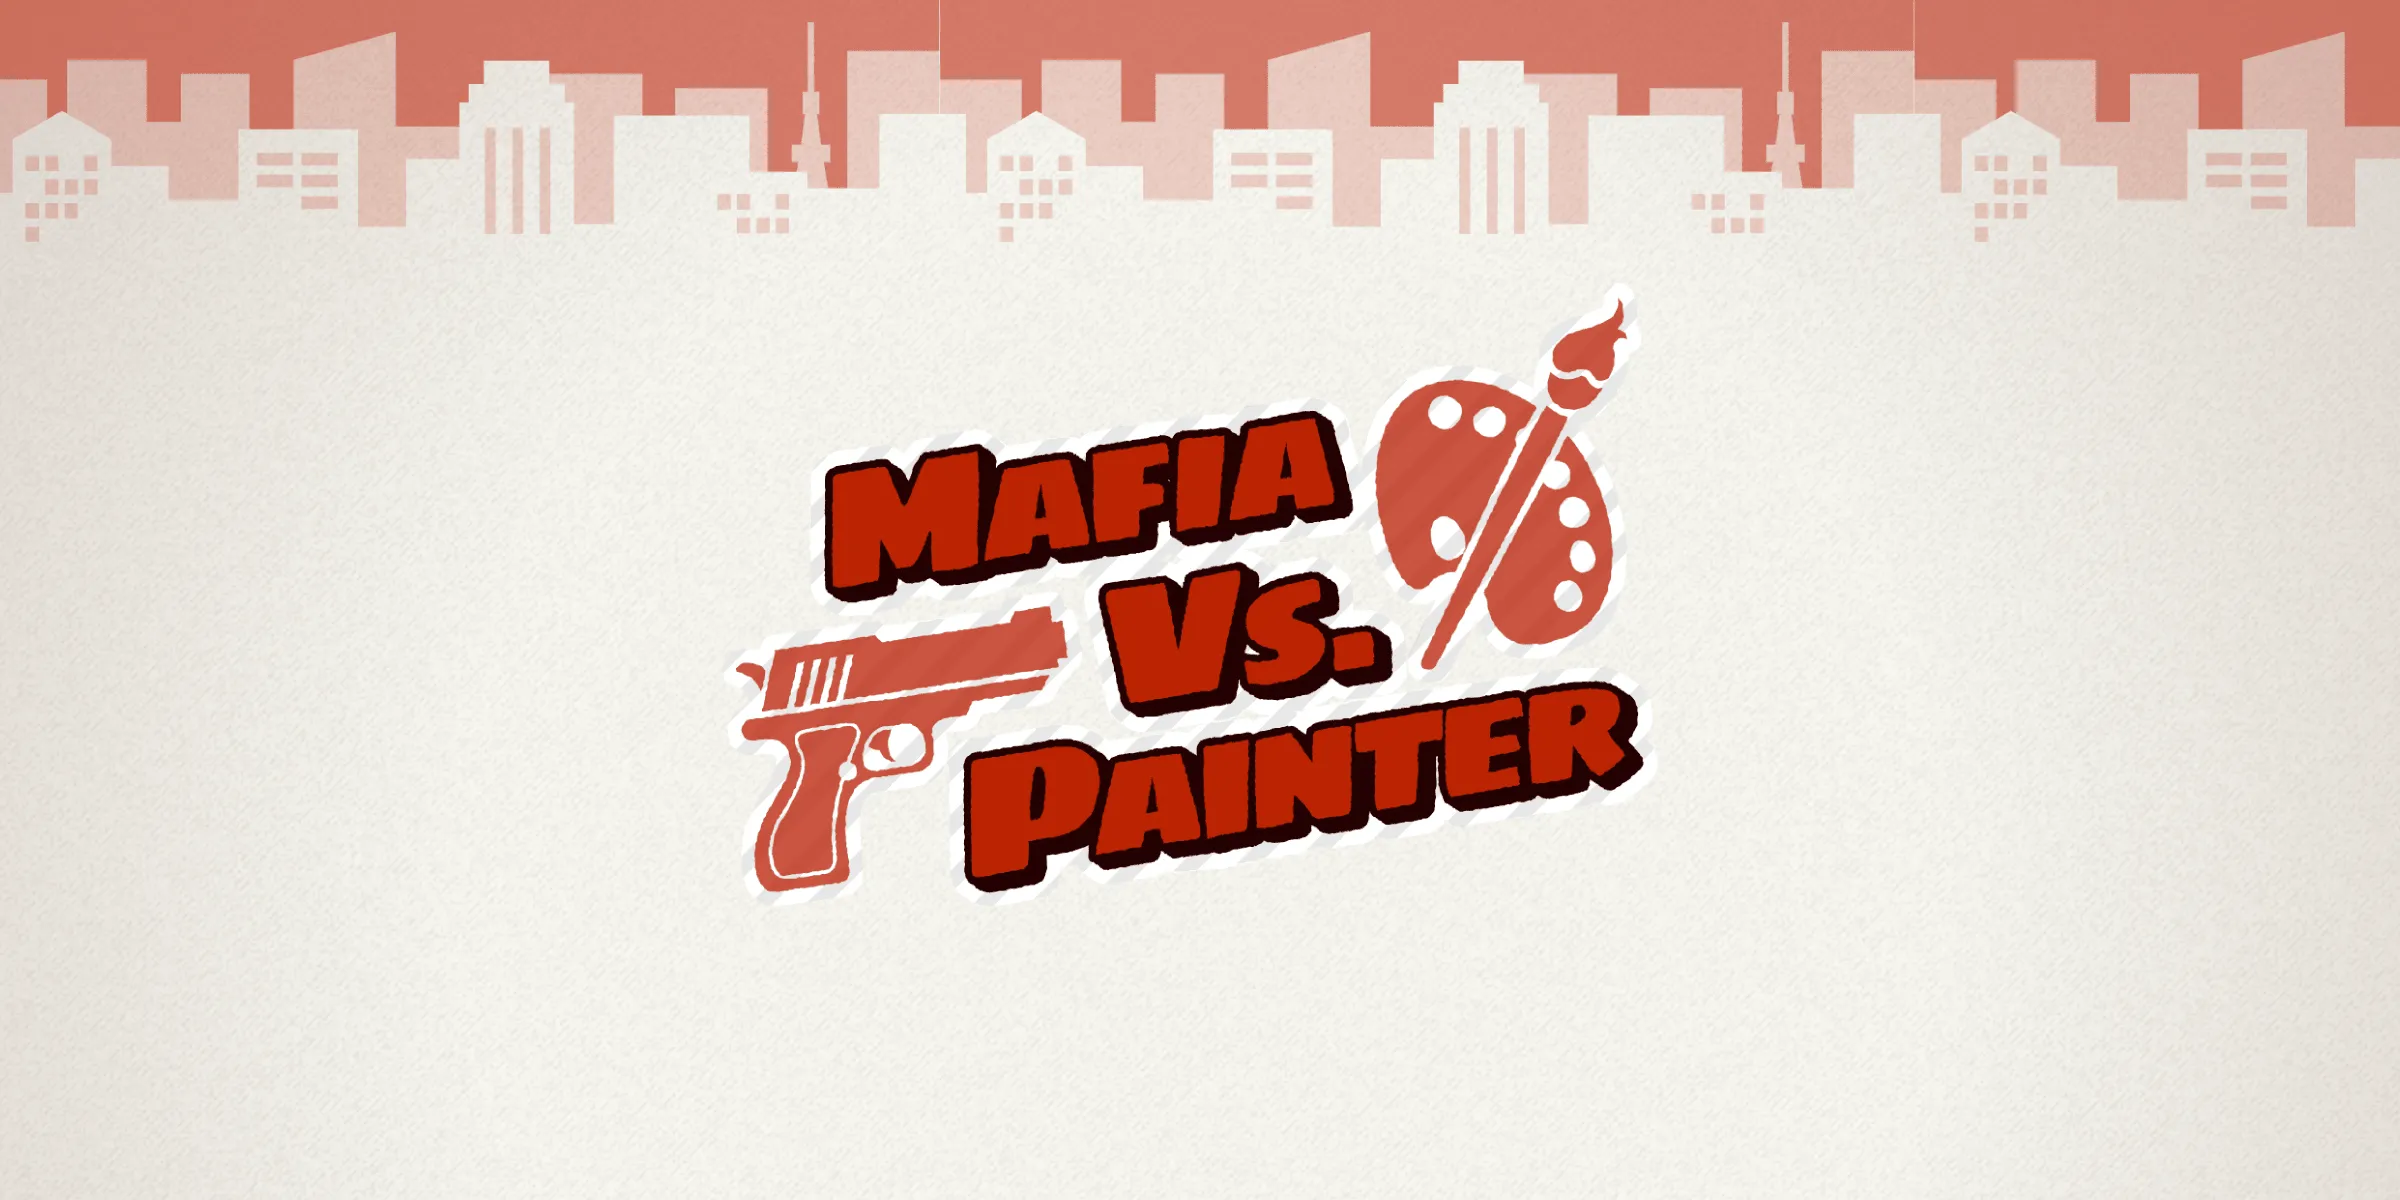 Mafia vs Painter